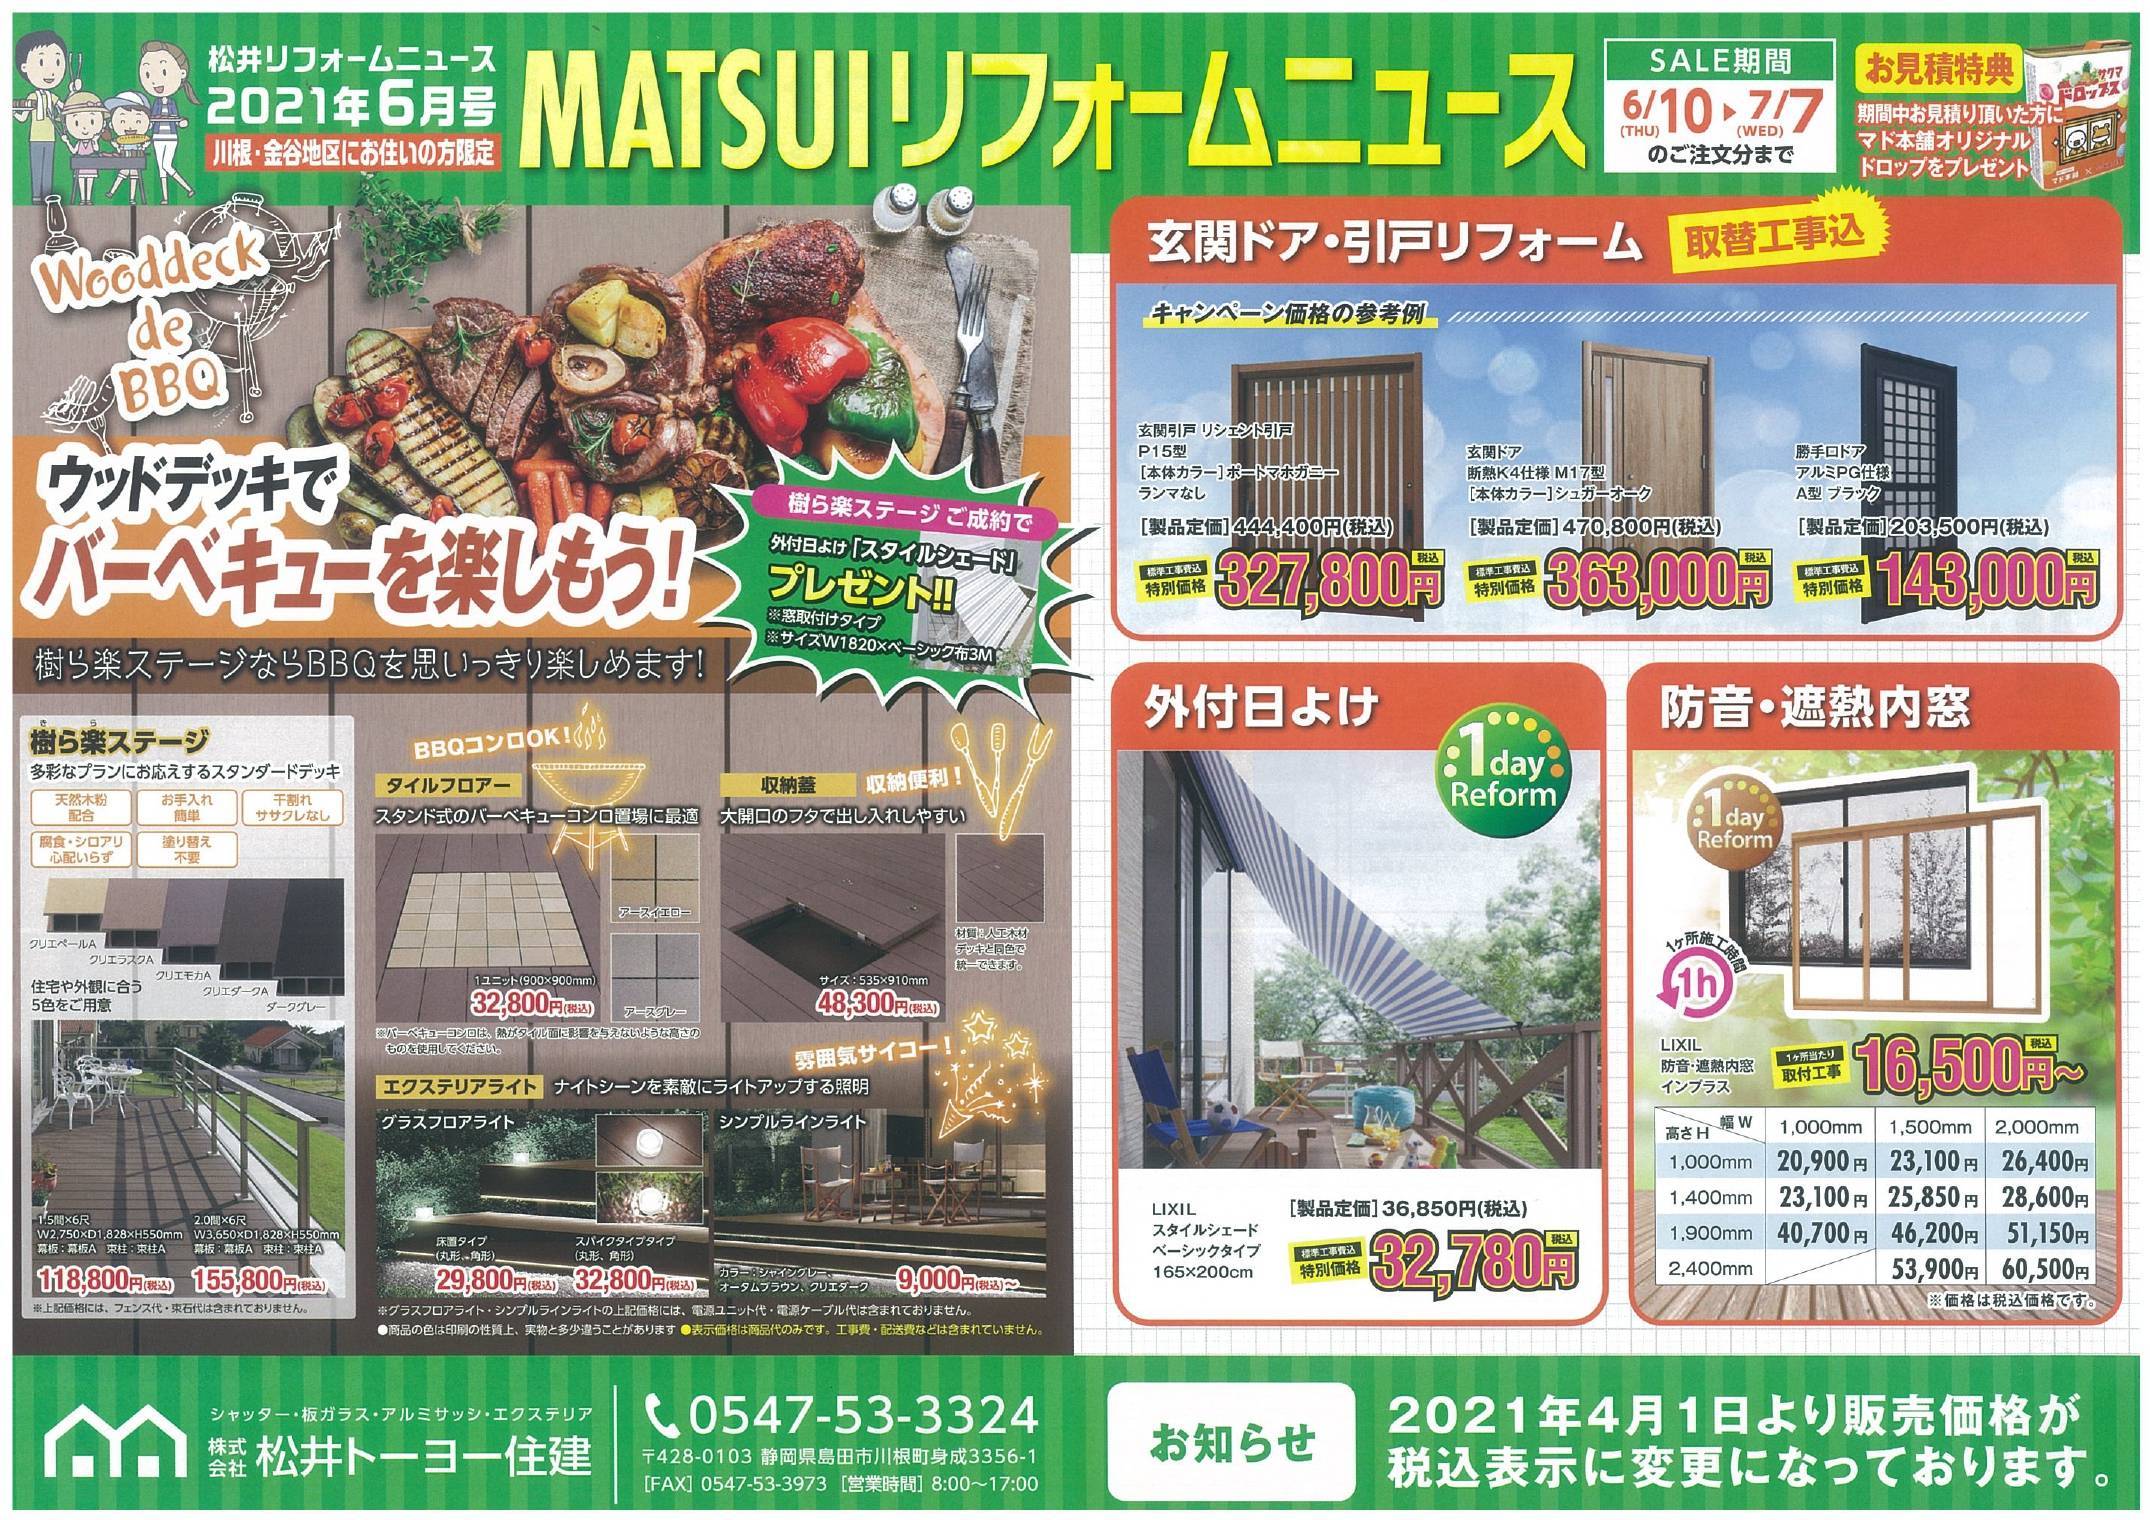 MATSUIリフォームNEWS 6月号 松井トーヨー住建のイベントキャンペーン 写真1